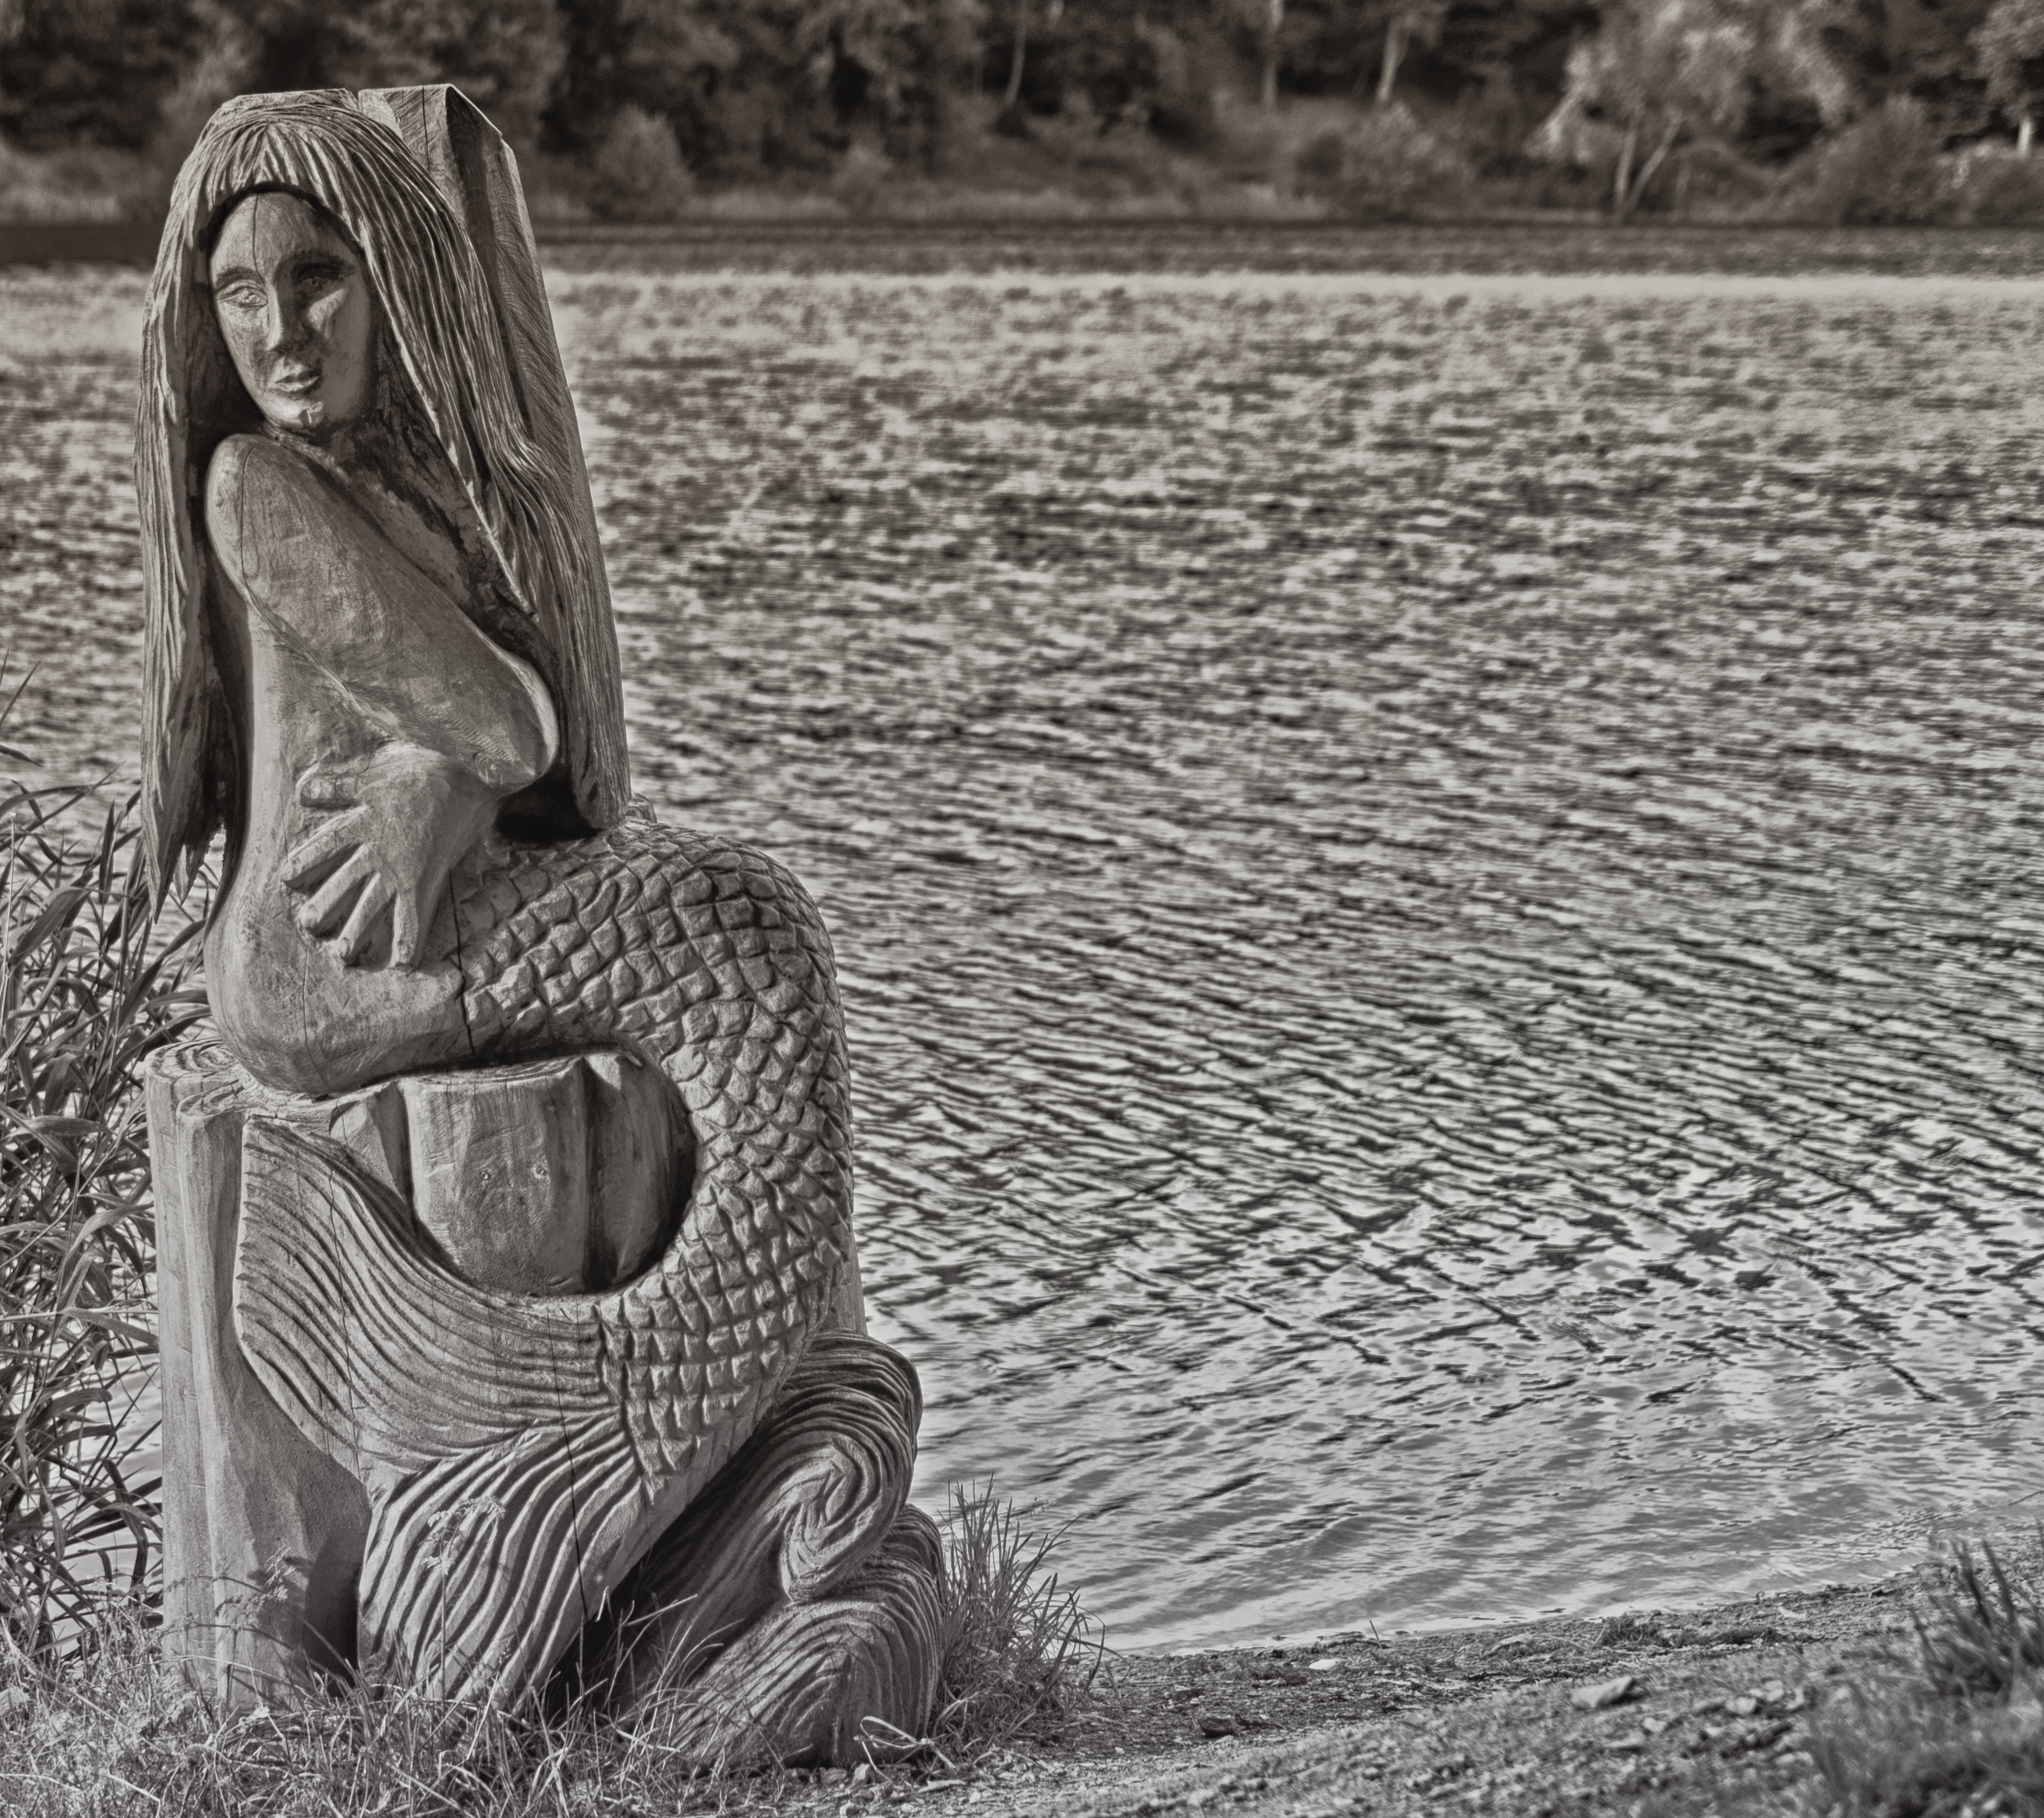 mermaid stone figurine